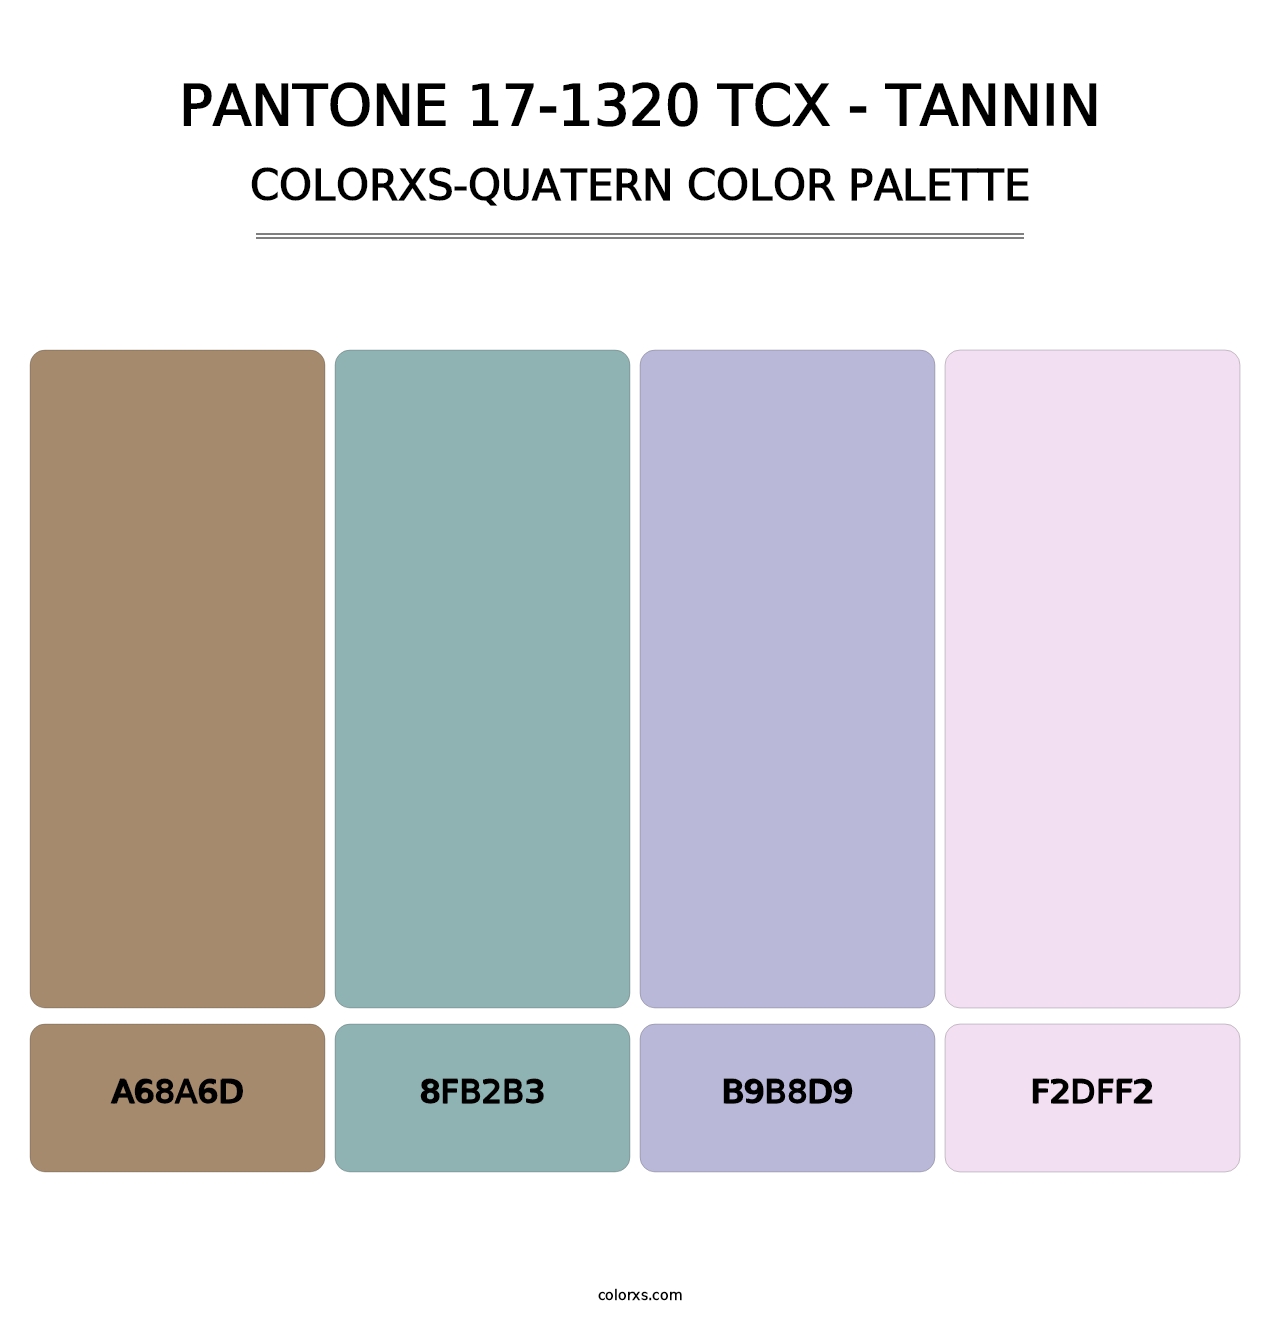 PANTONE 17-1320 TCX - Tannin - Colorxs Quatern Palette